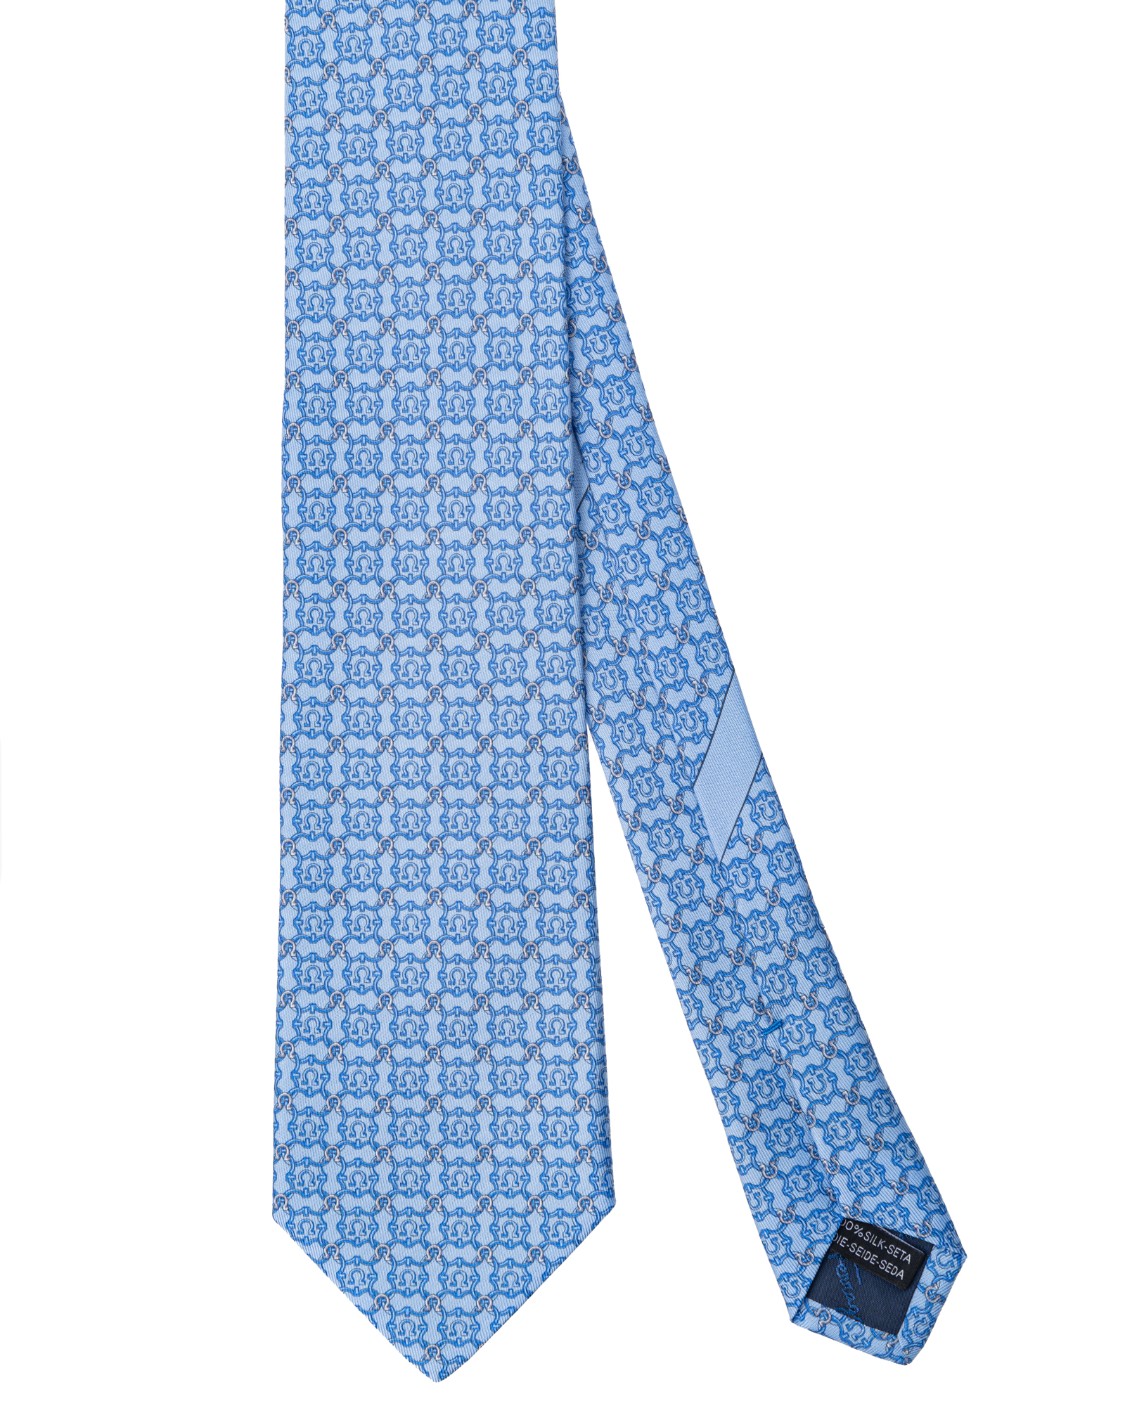 shop SALVATORE FERRAGAMO  Cravatta: Salvatore Ferragamo cravatta in jacquard di seta.
Decorata da un pattern geometrico formati dai "gancini".
Fondo a 7 cm.
Composizione: 100% seta.
Made in Italy.. 350499 4 OPERA-003 749969 number 6504712